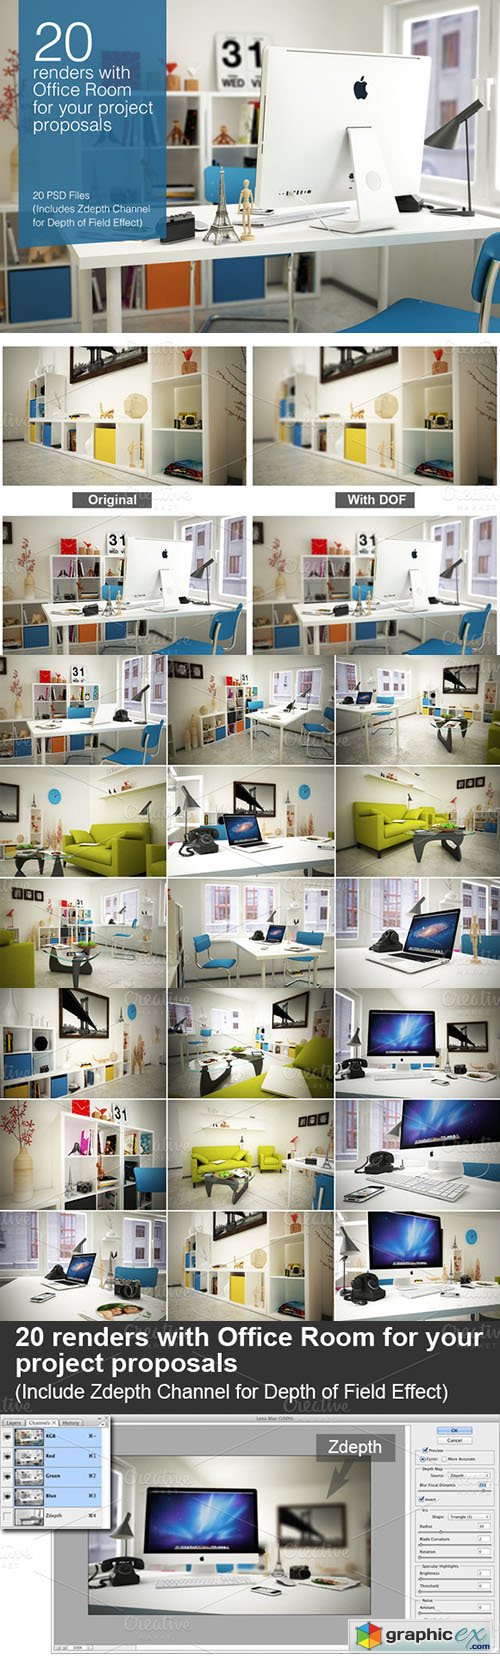  20 Image Renders Indoor Office Room